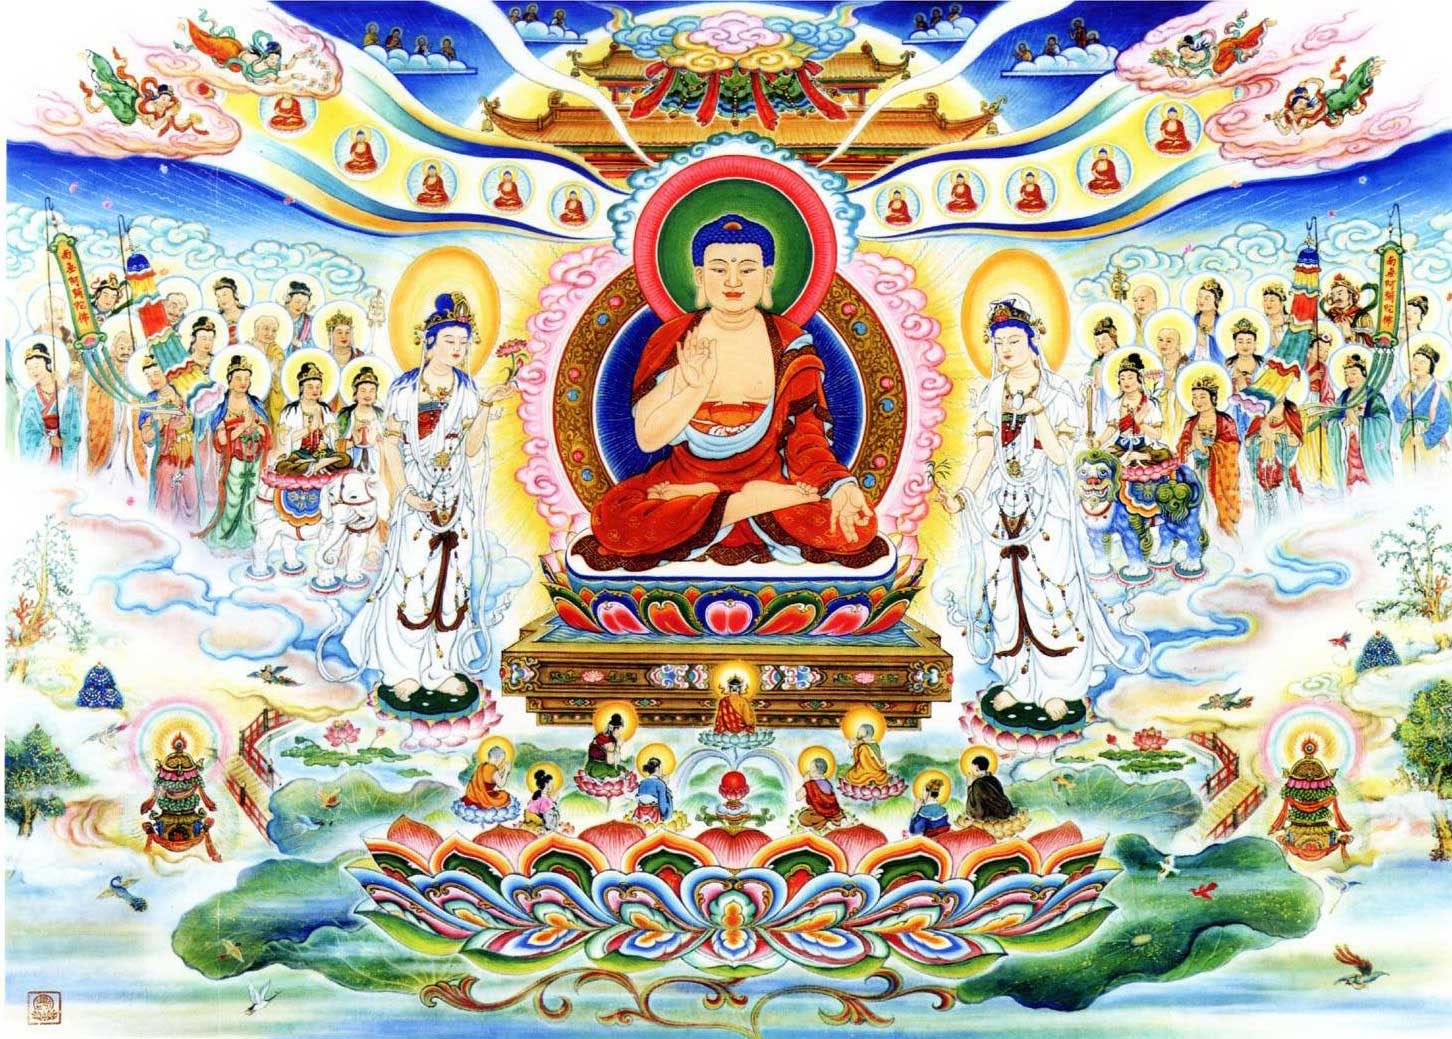 Hình ảnh Phật mang đến cho chúng ta bình an, hy vọng và sự ngọt ngào. Hãy thưởng thức những bức tranh và tác phẩm nghệ thuật của các họa sĩ về Đức Phật để truyền cảm hứng và tìm thấy ý nghĩa sâu sắc trong đạo Phật.